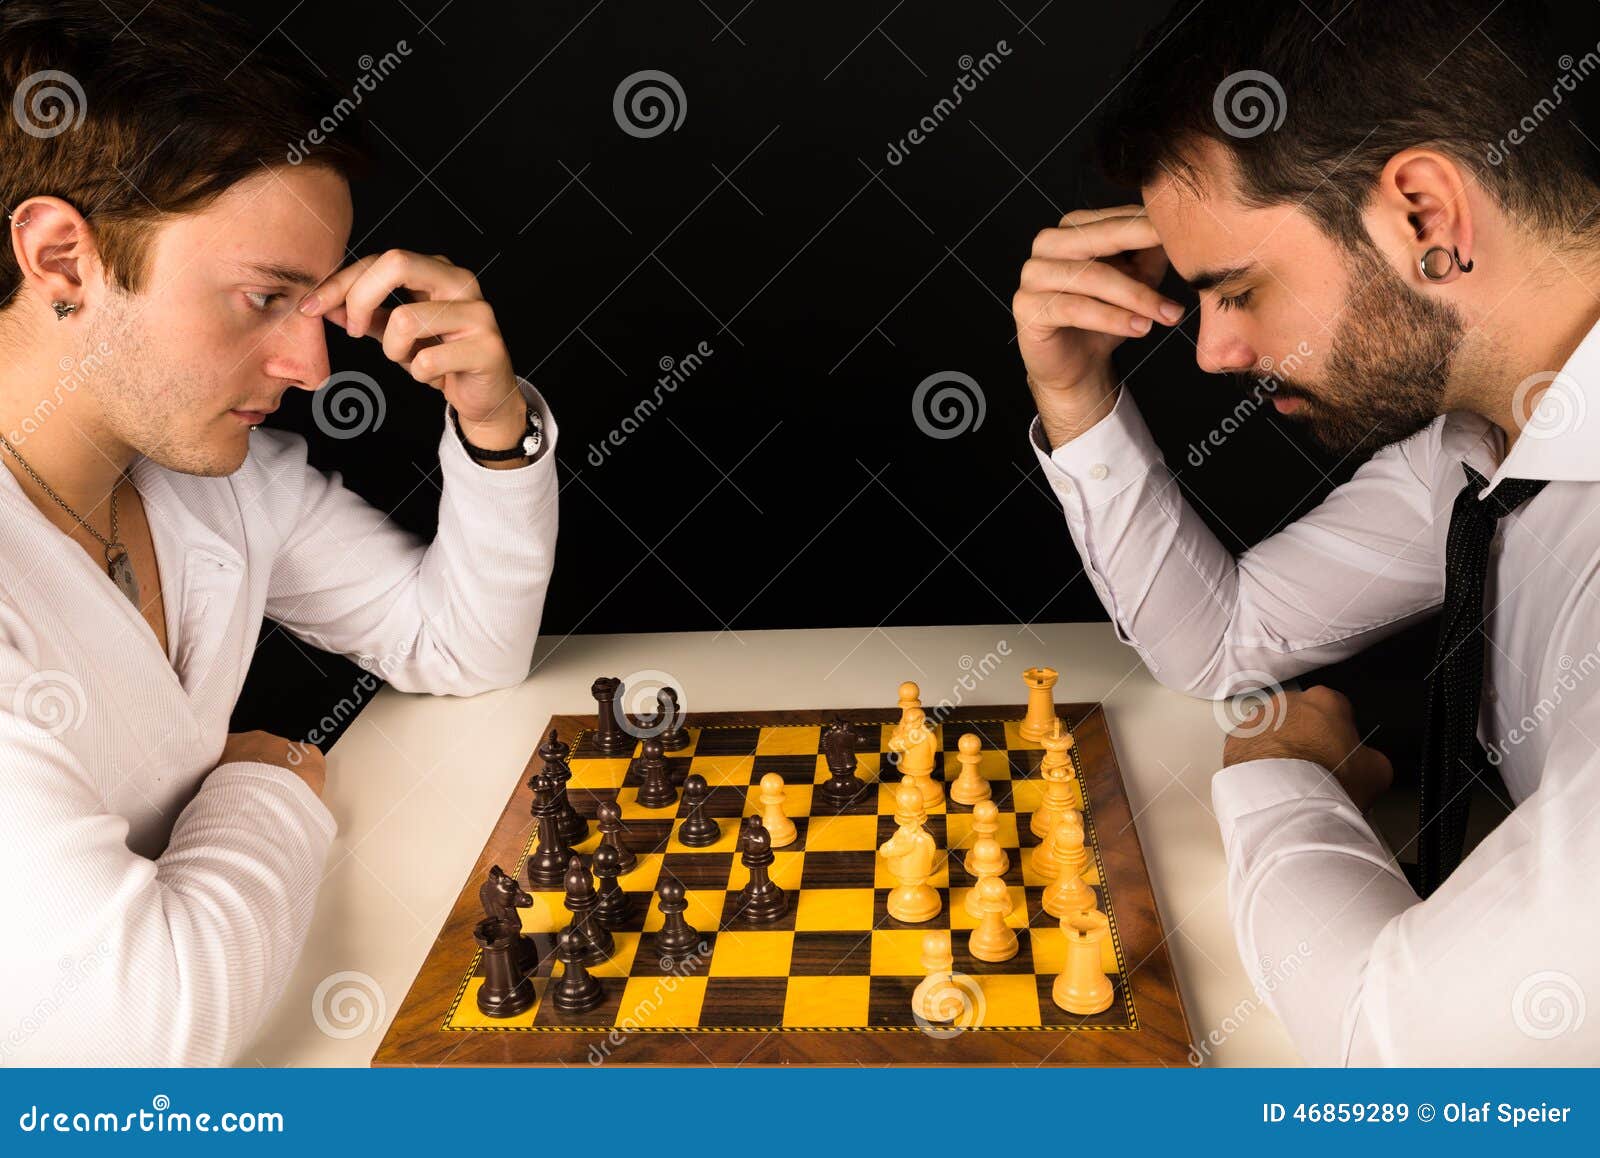 Игра в шахматы с друзьями. Парень играющий в шахматы. Увлекается игрой в шахматы. Мужчина за игрой в шахматы. Мужчина с шахматами.